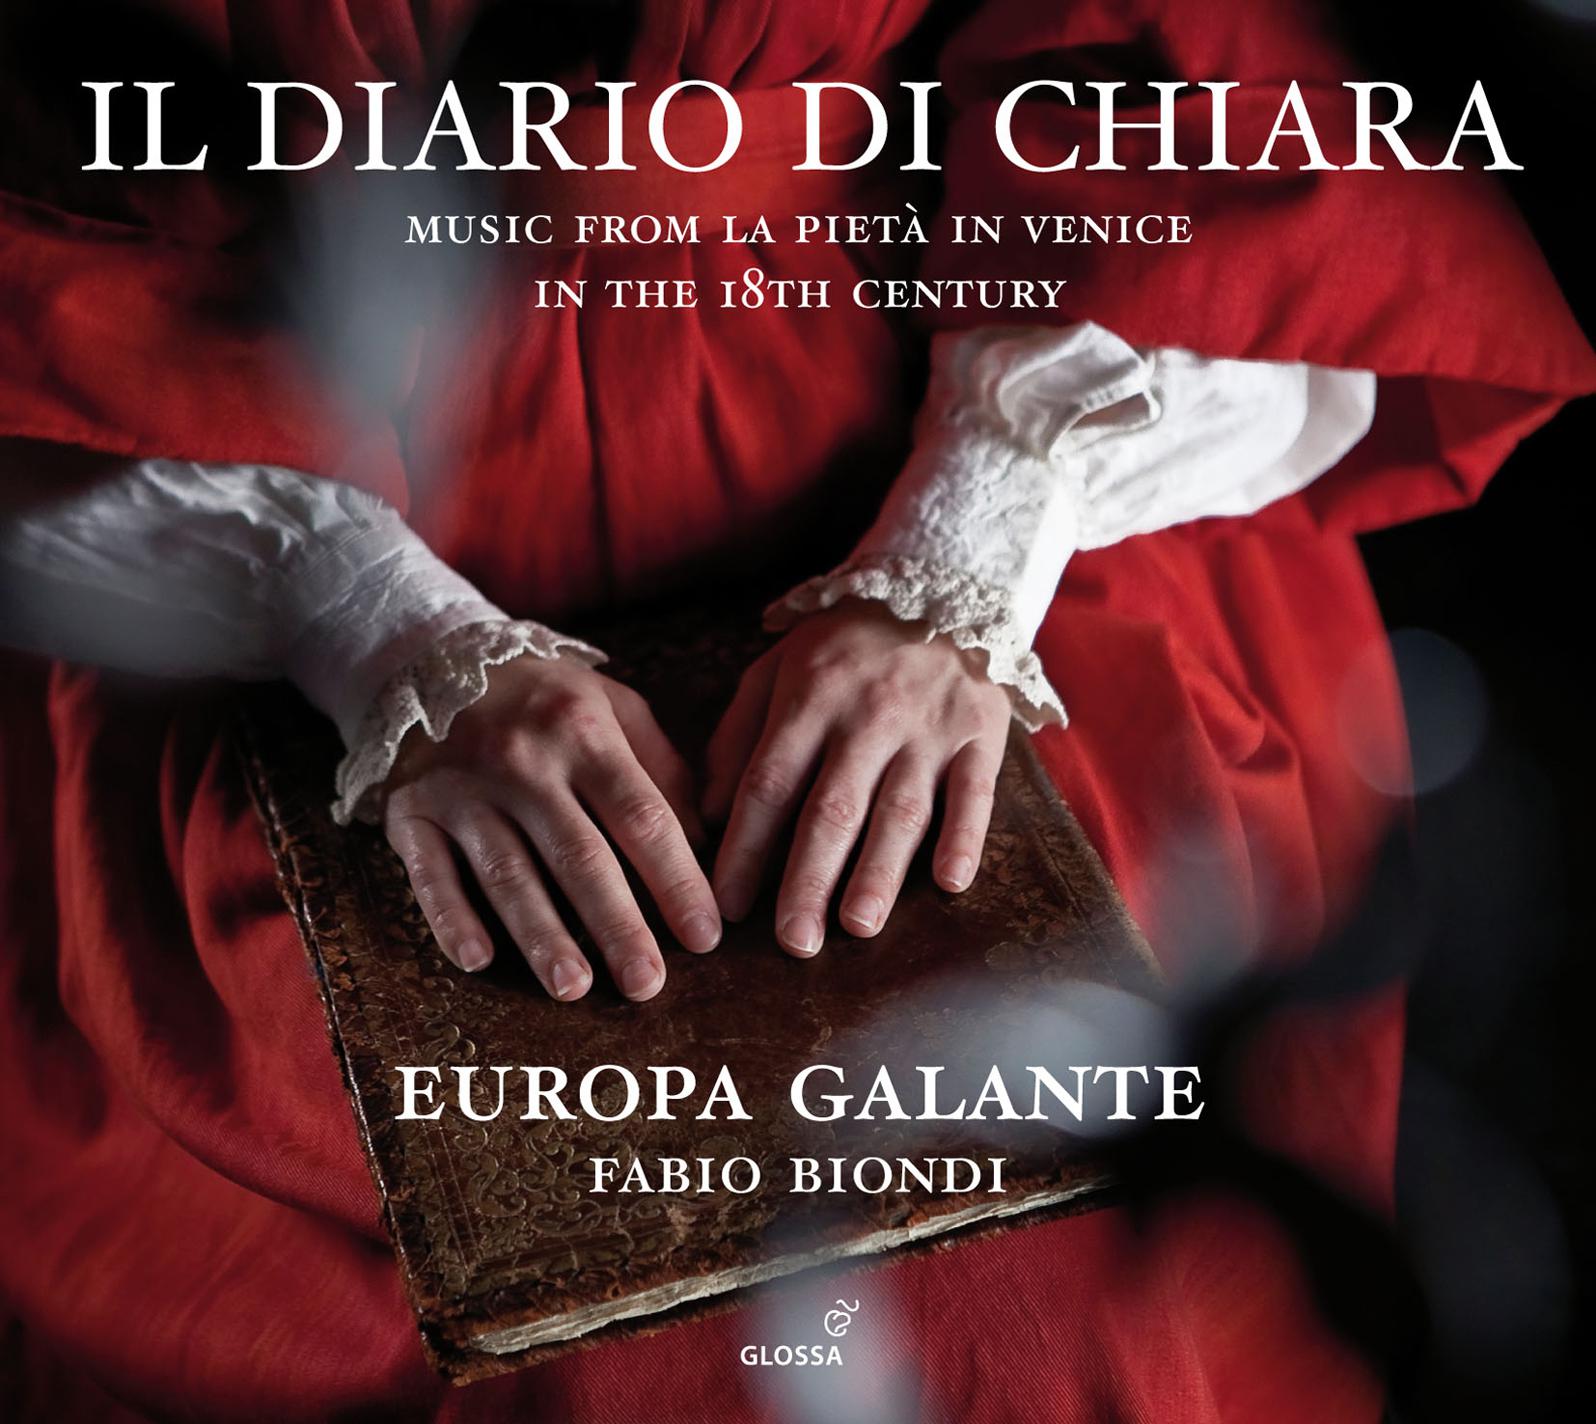 Concerto for Viola d'amore and Strings in D Major, "Per la S.ra Chiaretta": II. Adagio